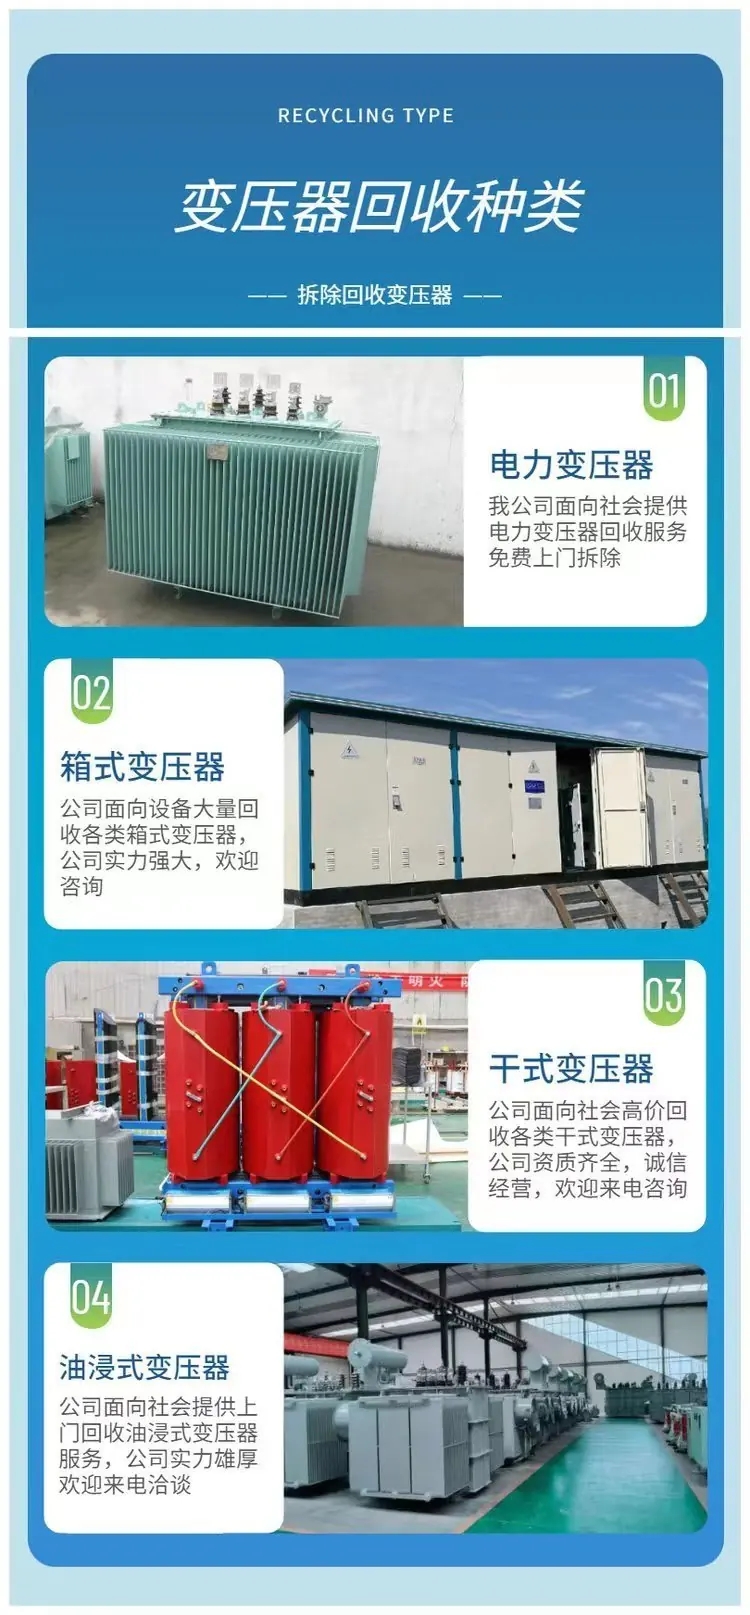 深圳光明新区二手变压器回收中心变压器回收处置价格